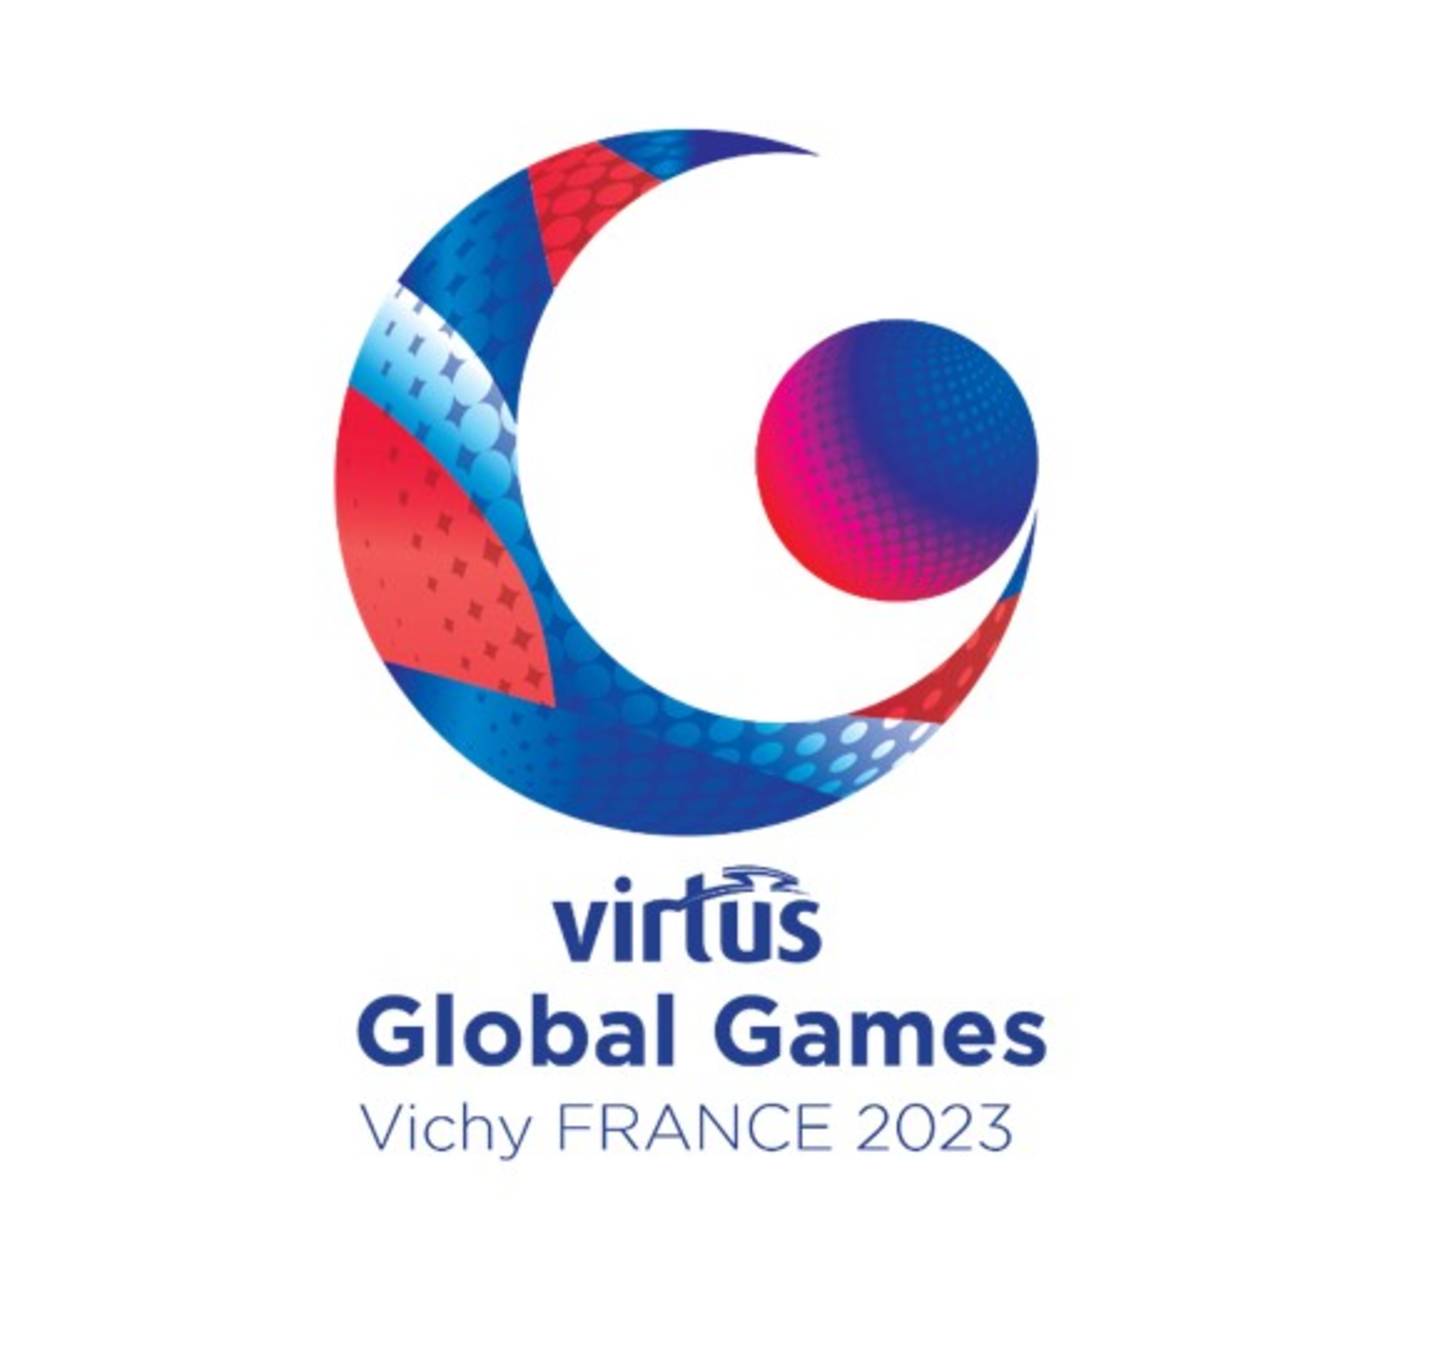 Virtus Global Games 2023 logo